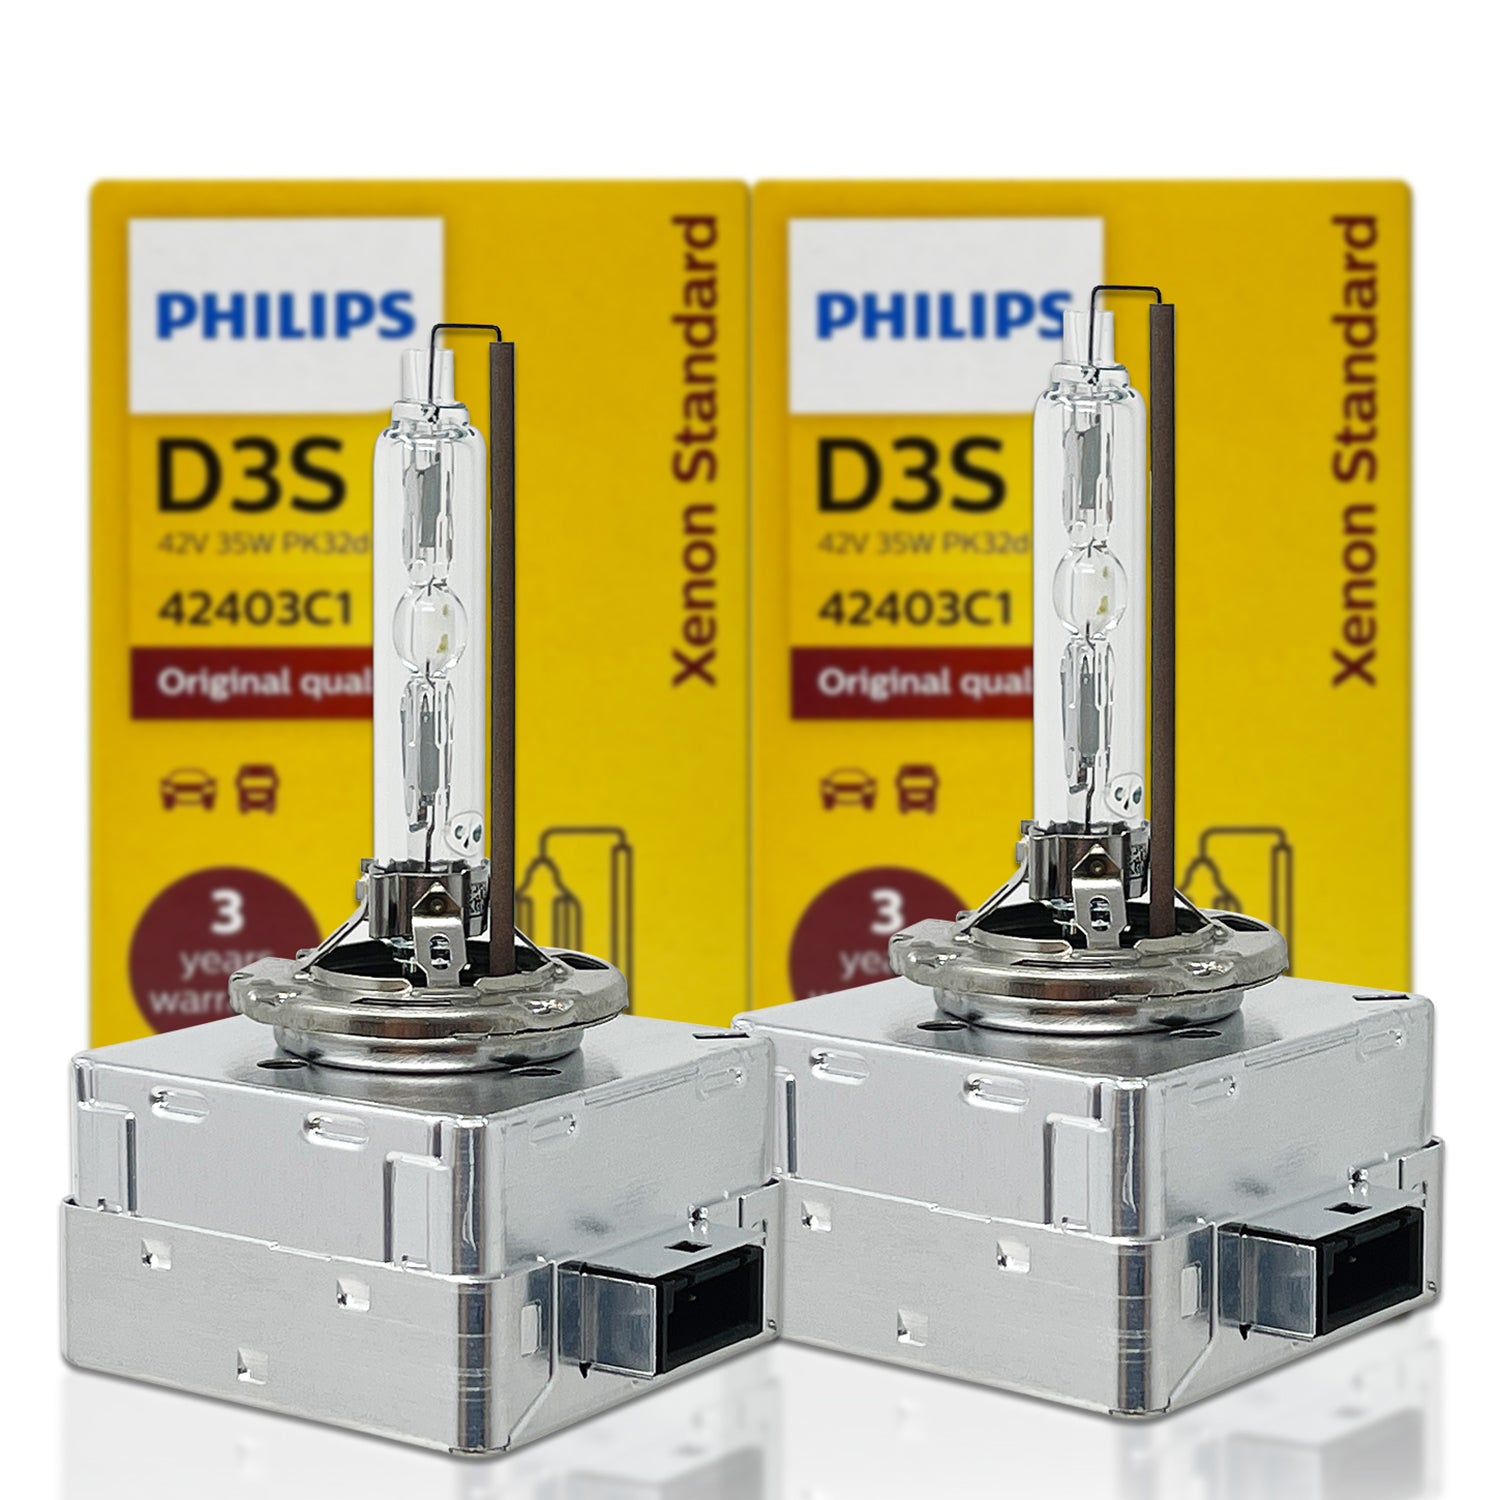 Philips-bombillas de Xenón HID D3S 42403WXX2 para coche, luz